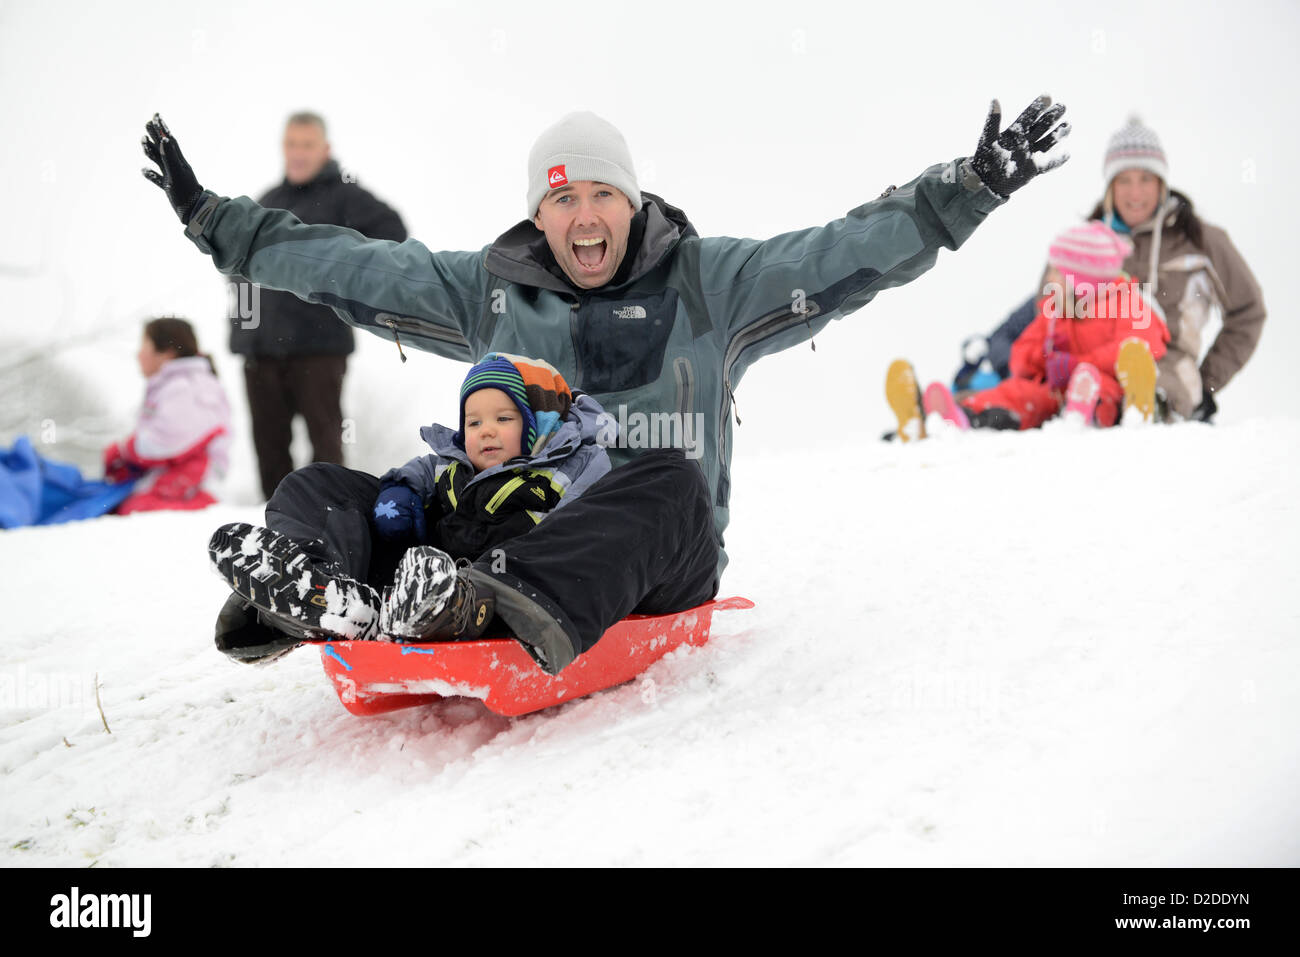 Padre e hijo trineos en Shropshire. Invierno nevado Gran Bretaña condiciones meteorológicas inviernos británicos diversión familia trineos Foto de stock